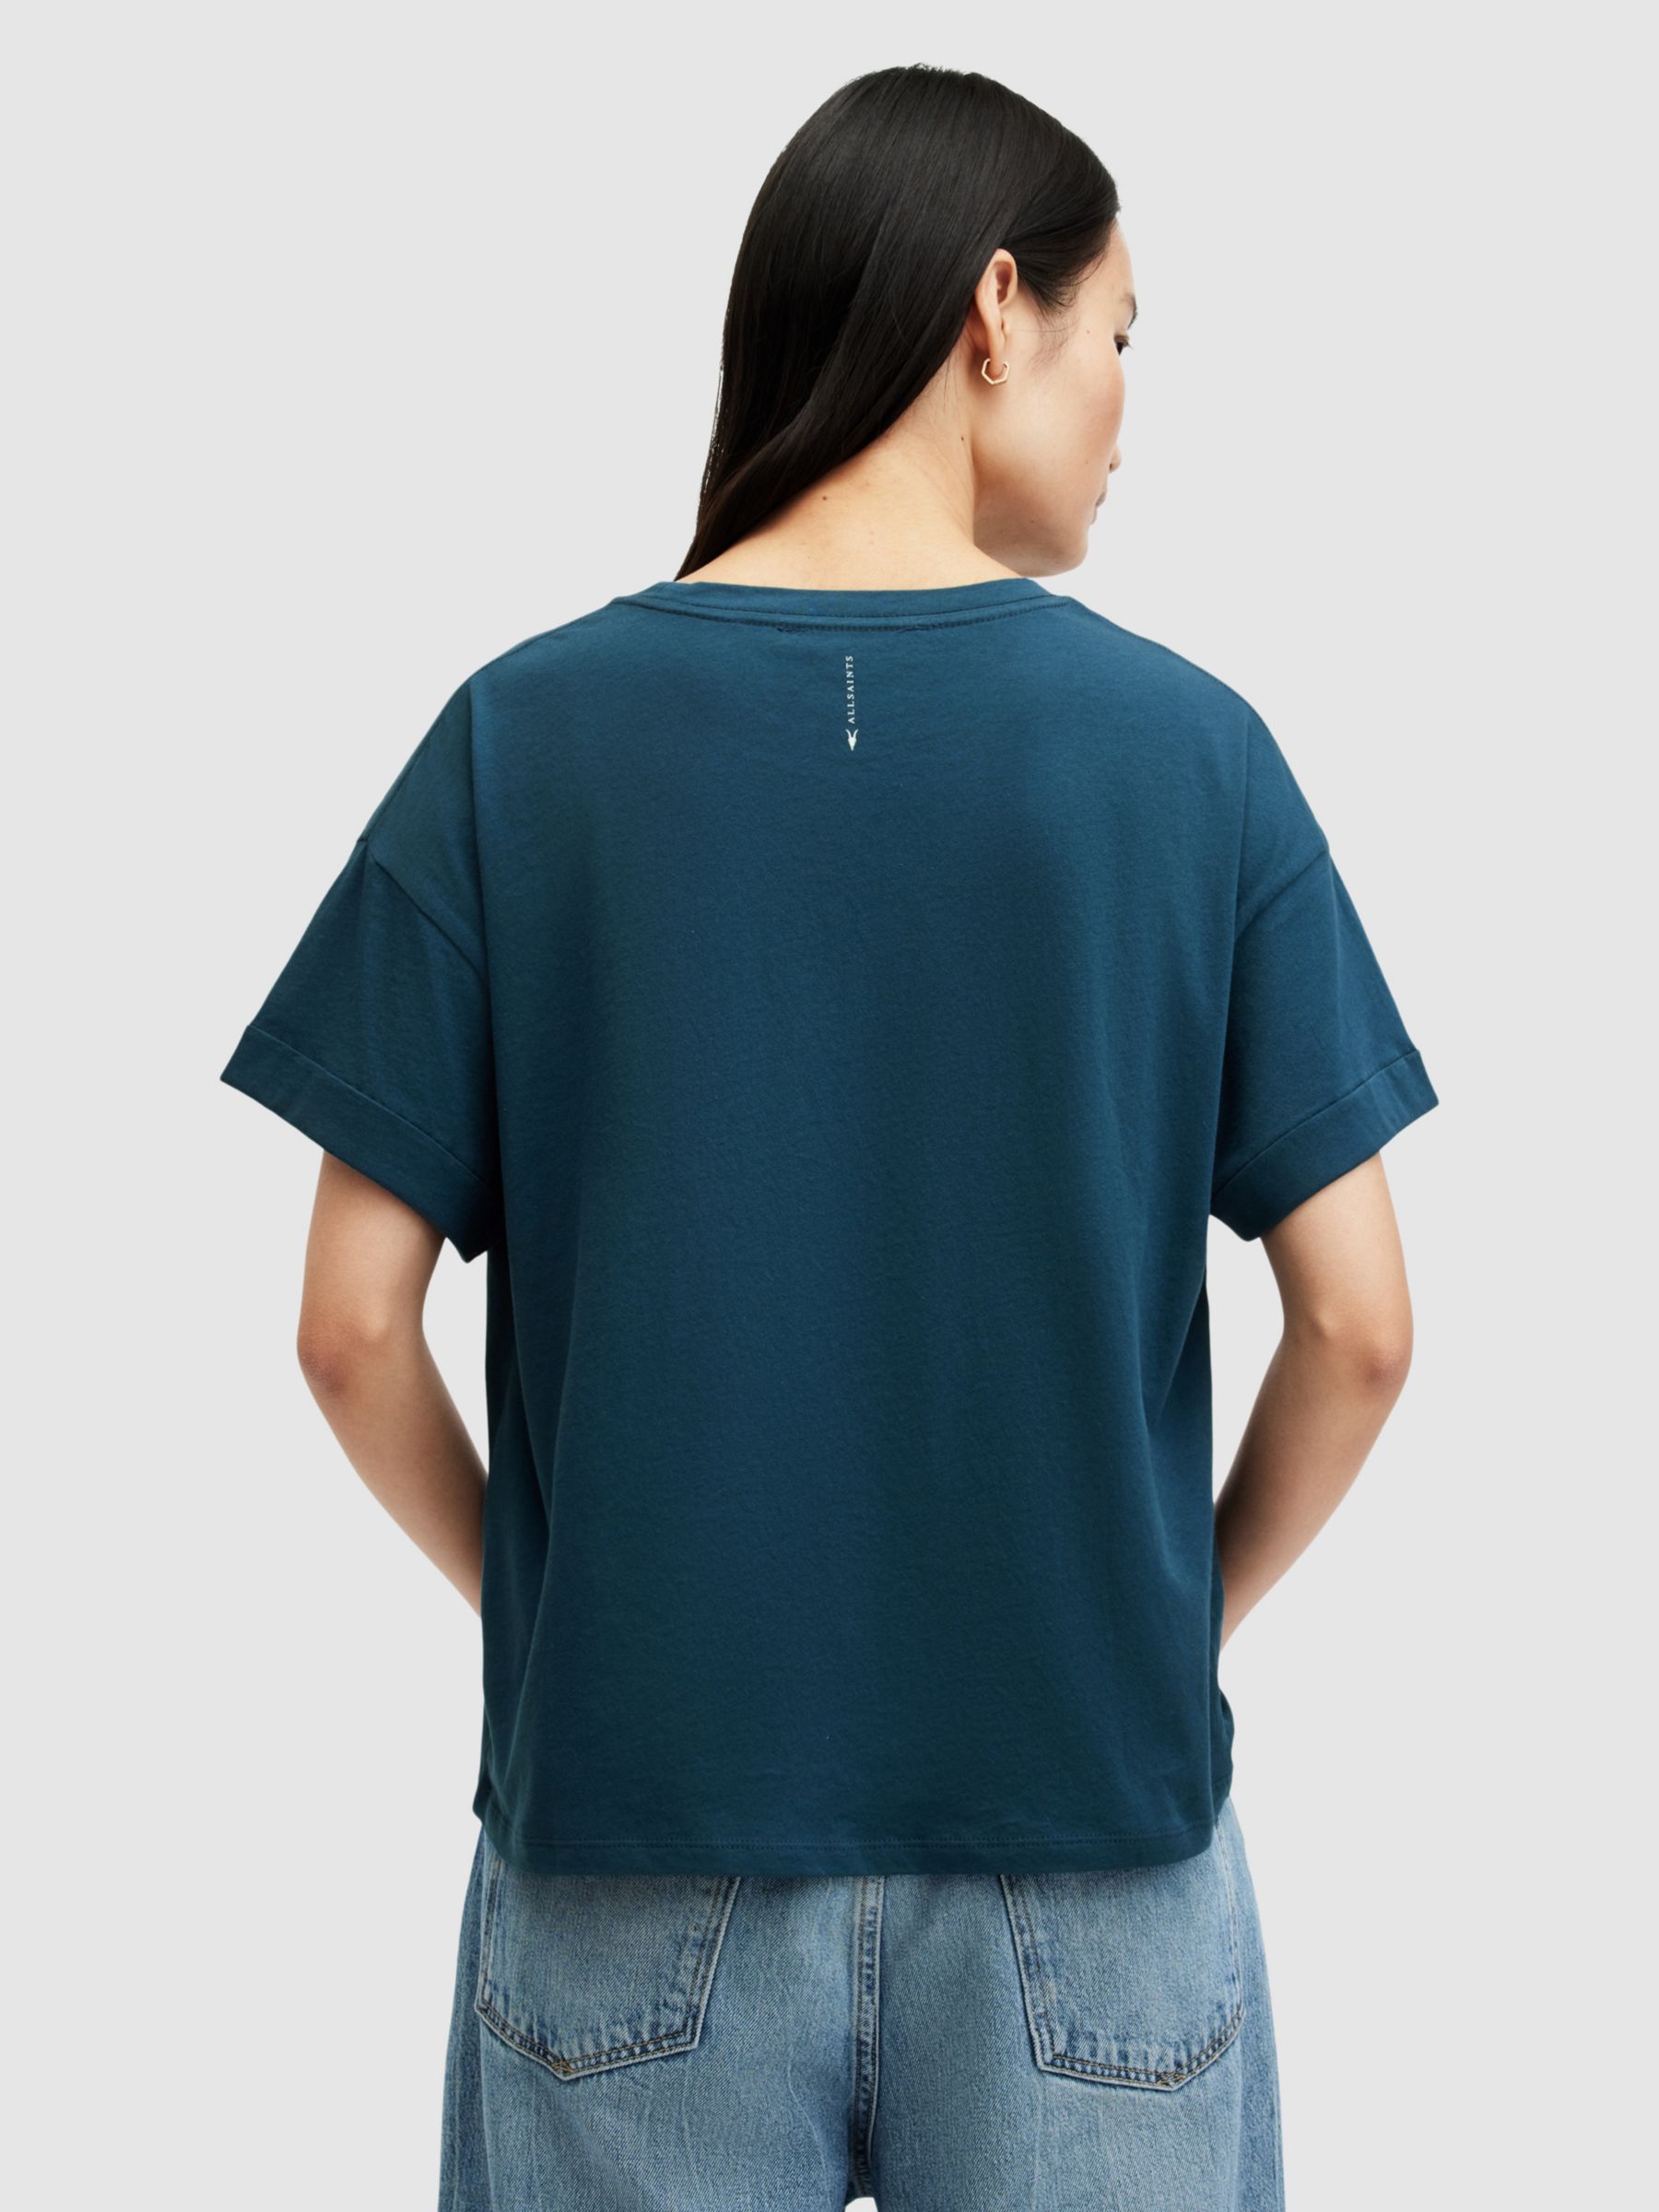 Buy AllSaints Briar Plain Organic Cotton T-Shirt, Ink Blue Online at johnlewis.com